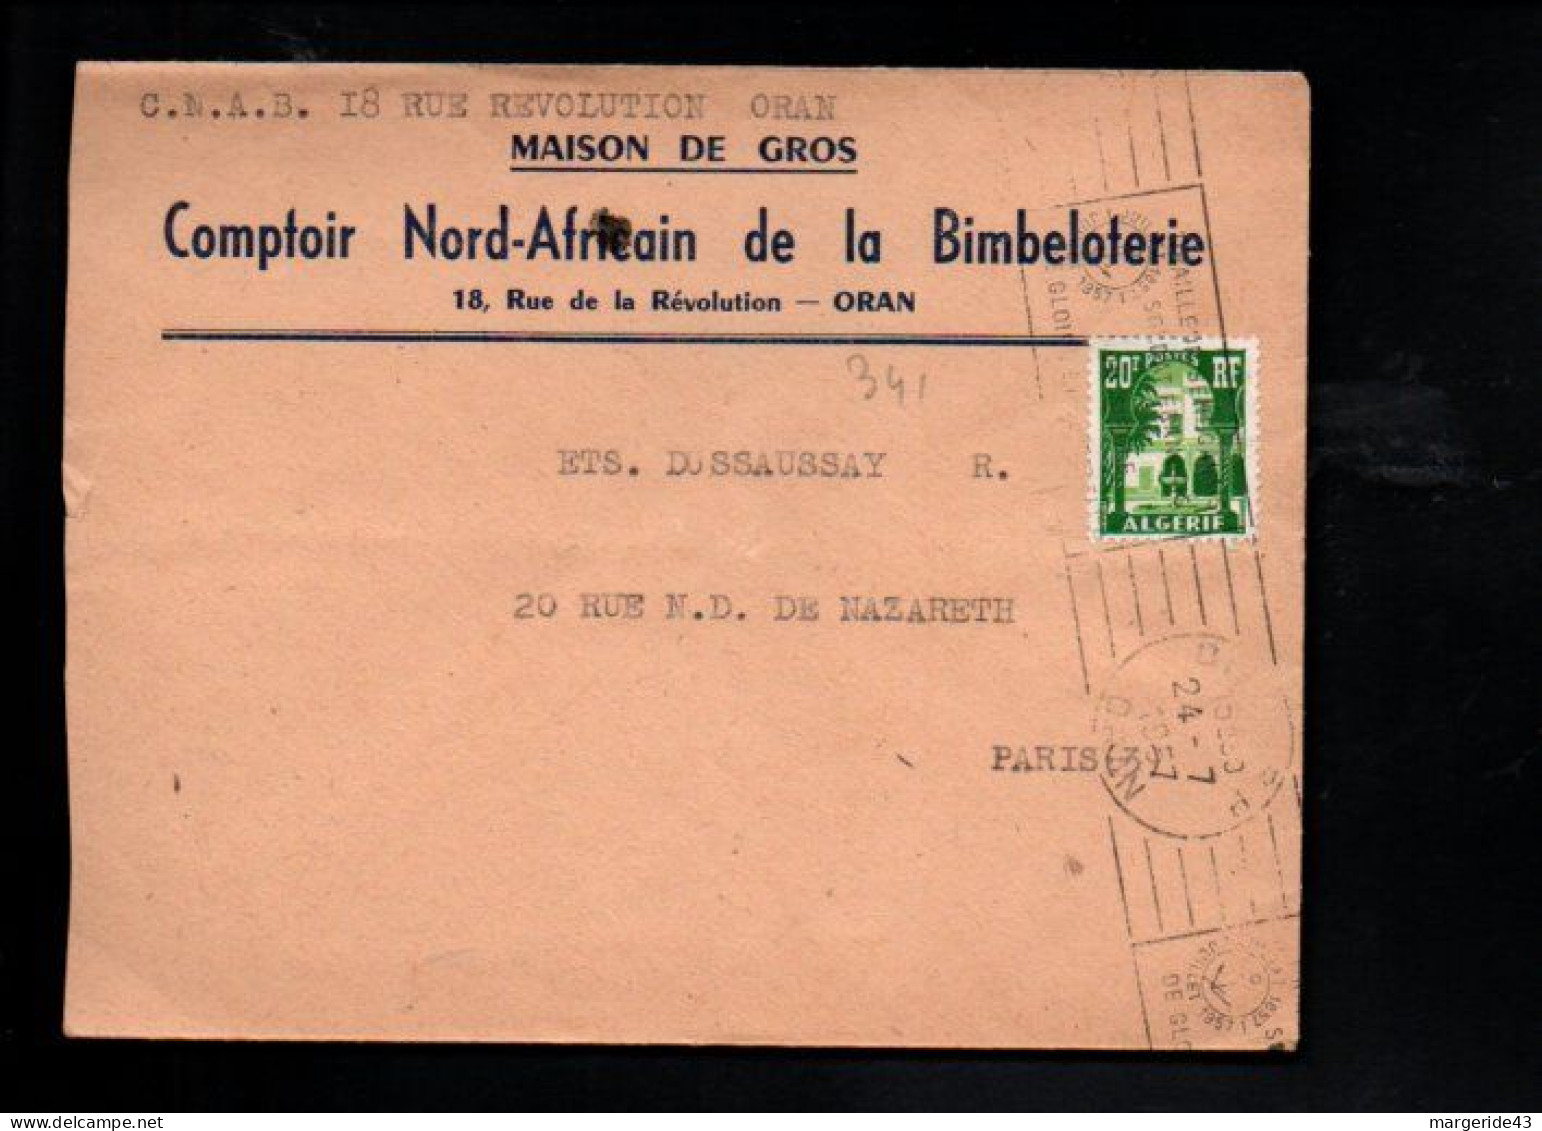 ALGERIE LETTRE A EN TETE DE ORAN POUR LA FRANCE 1957 - Lettres & Documents